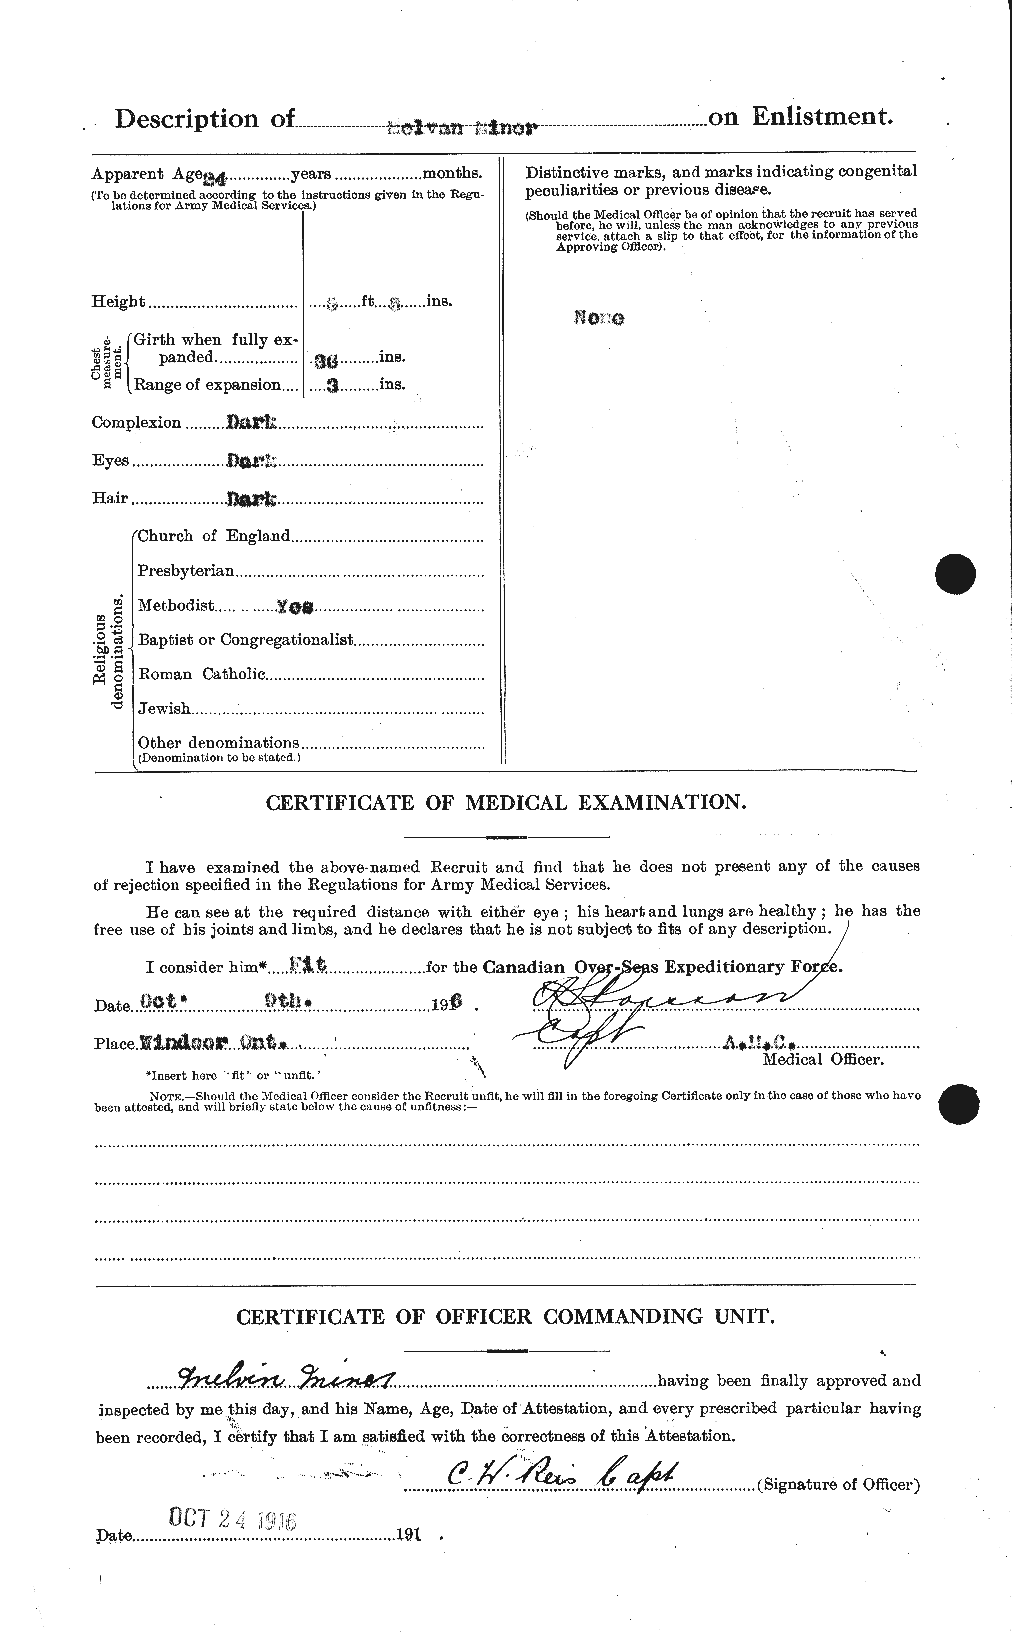 Dossiers du Personnel de la Première Guerre mondiale - CEC 500807b